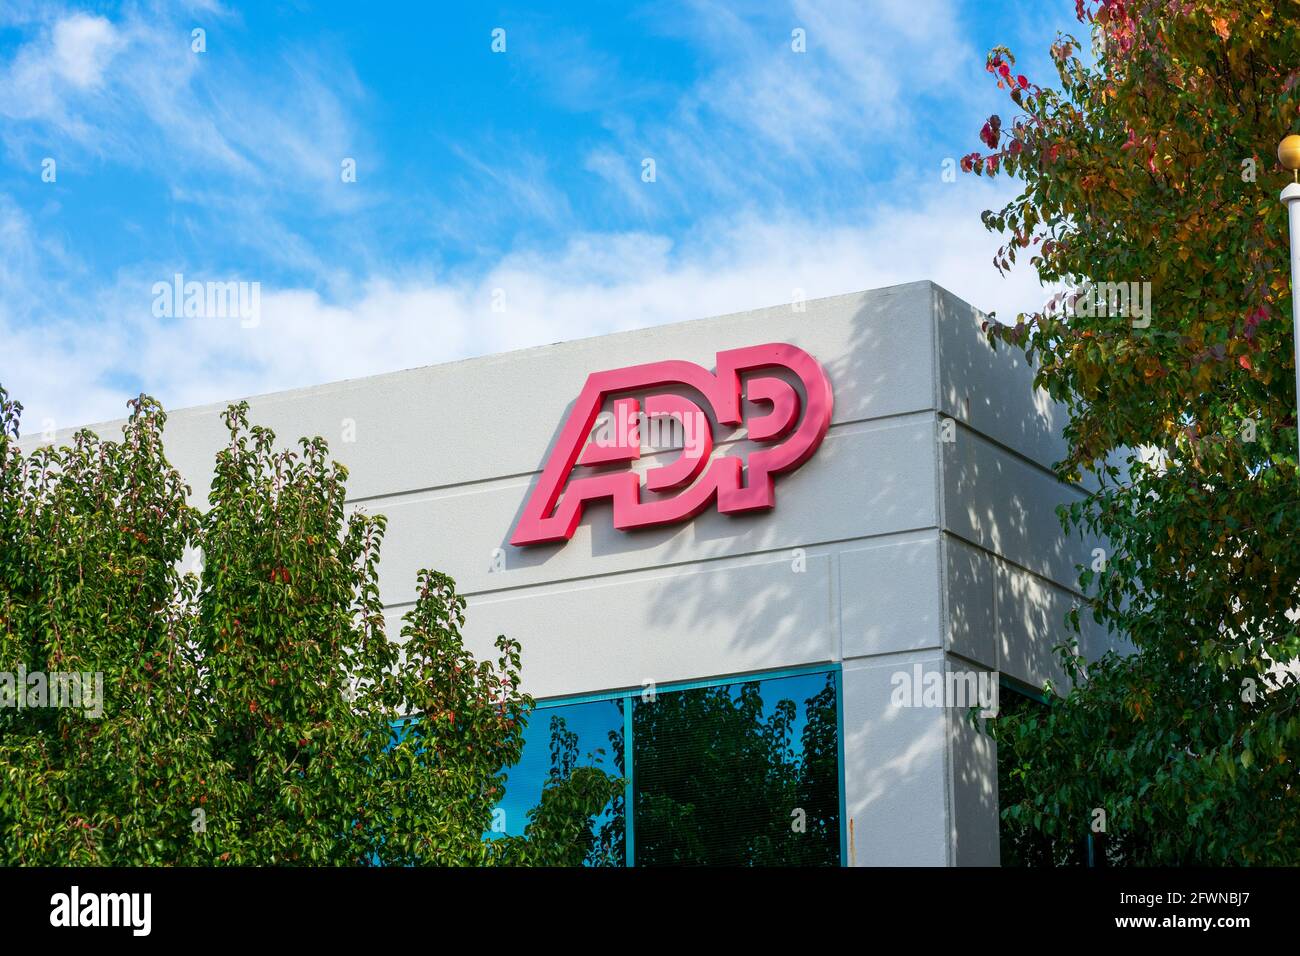 Adp logo Banque de photographies et d'images à haute résolution - Alamy